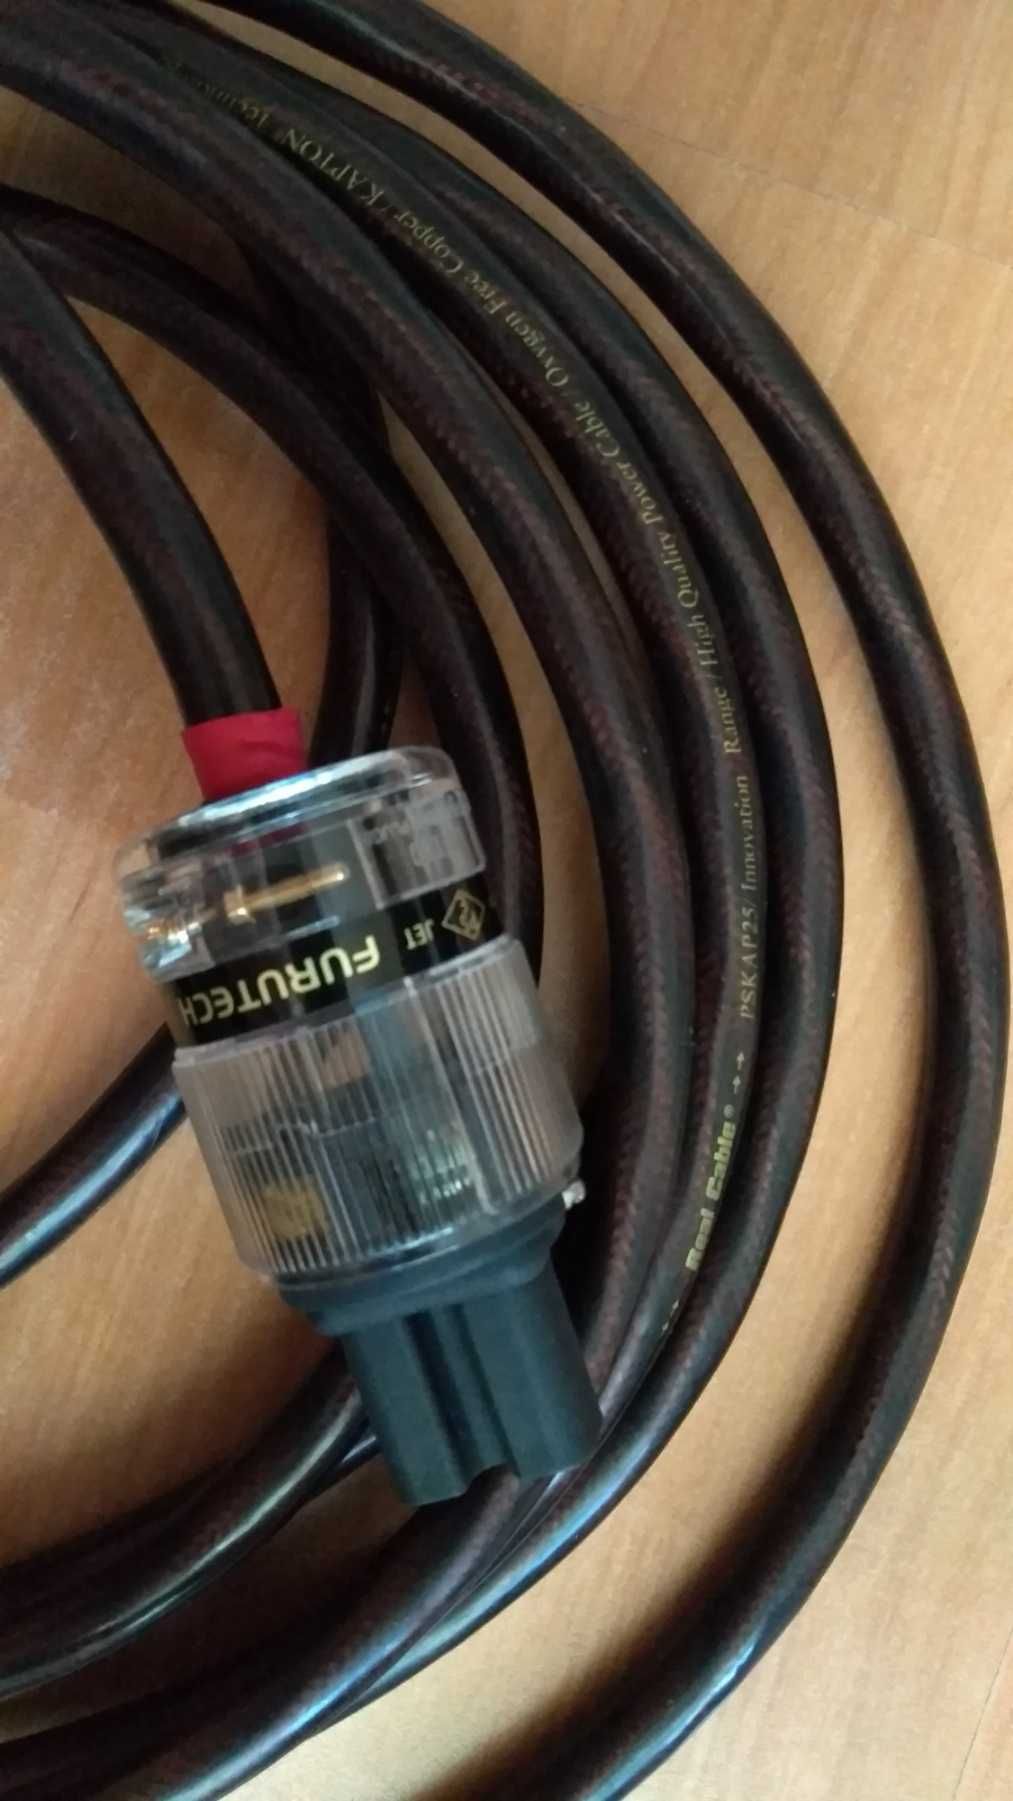 Дешево! Atlas сетевой фильтр,Real cable PSK AP25. 1500грн